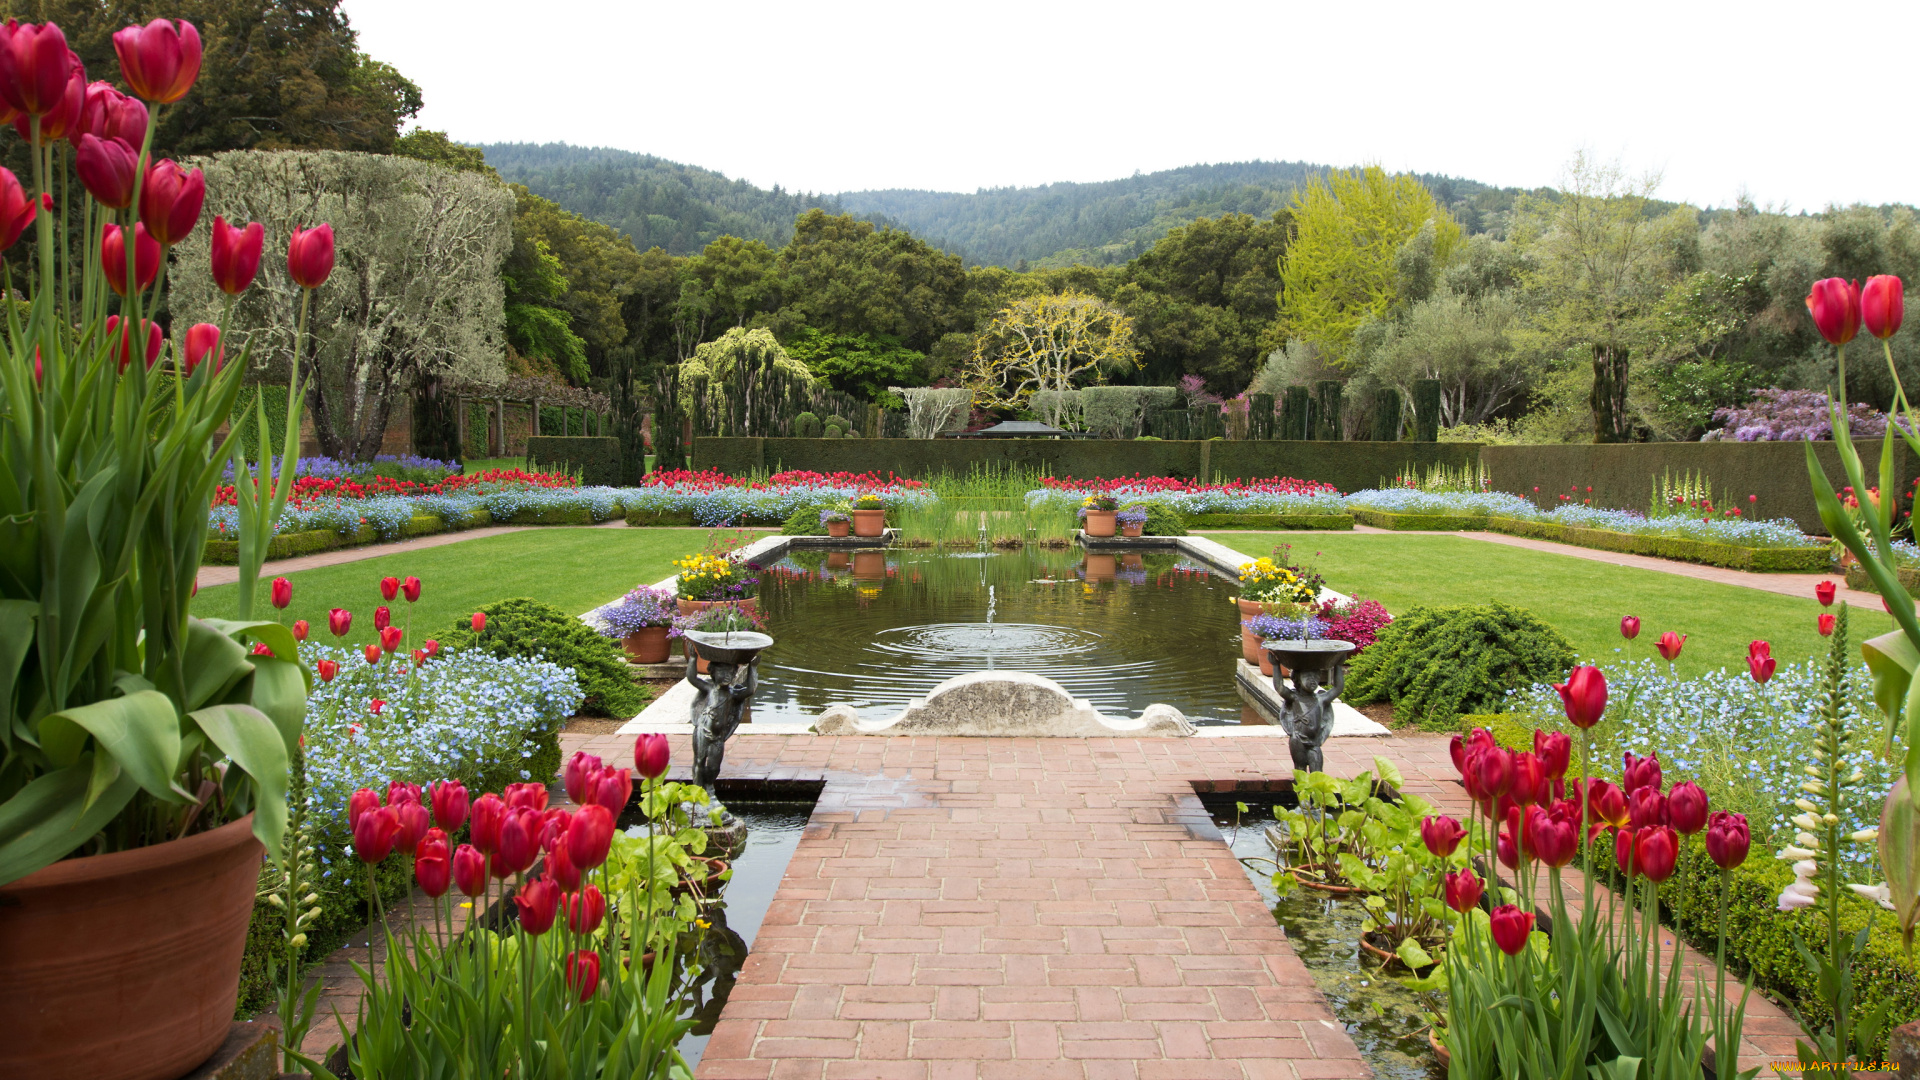 filoli, gardens, калифорния, сша, природа, парк, сад, фонтан, тюльпаны, деревья, клумбы